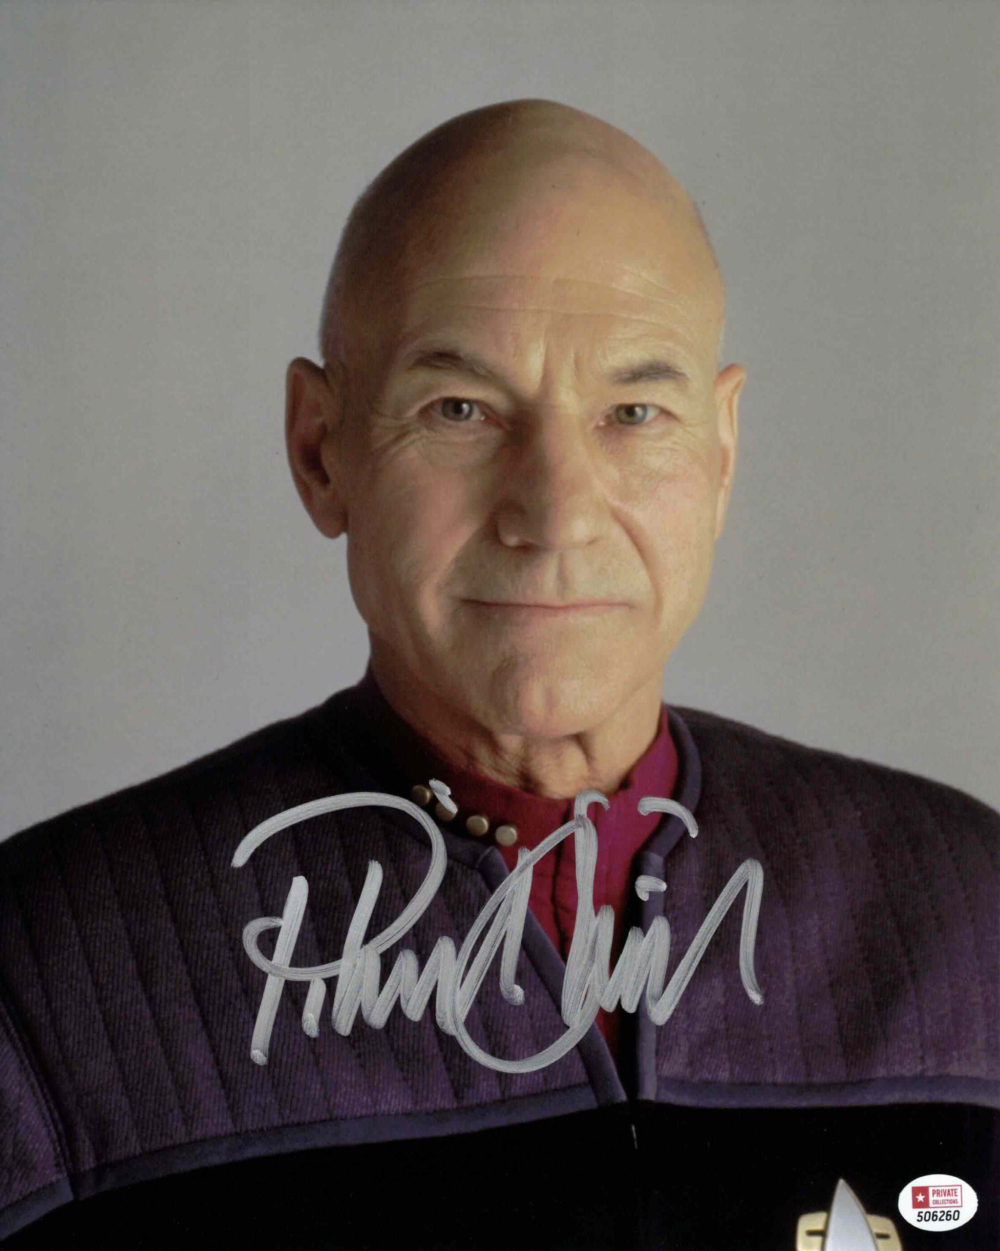 Patrick Stewart / Cpt. Picard, Star Trek - autogram